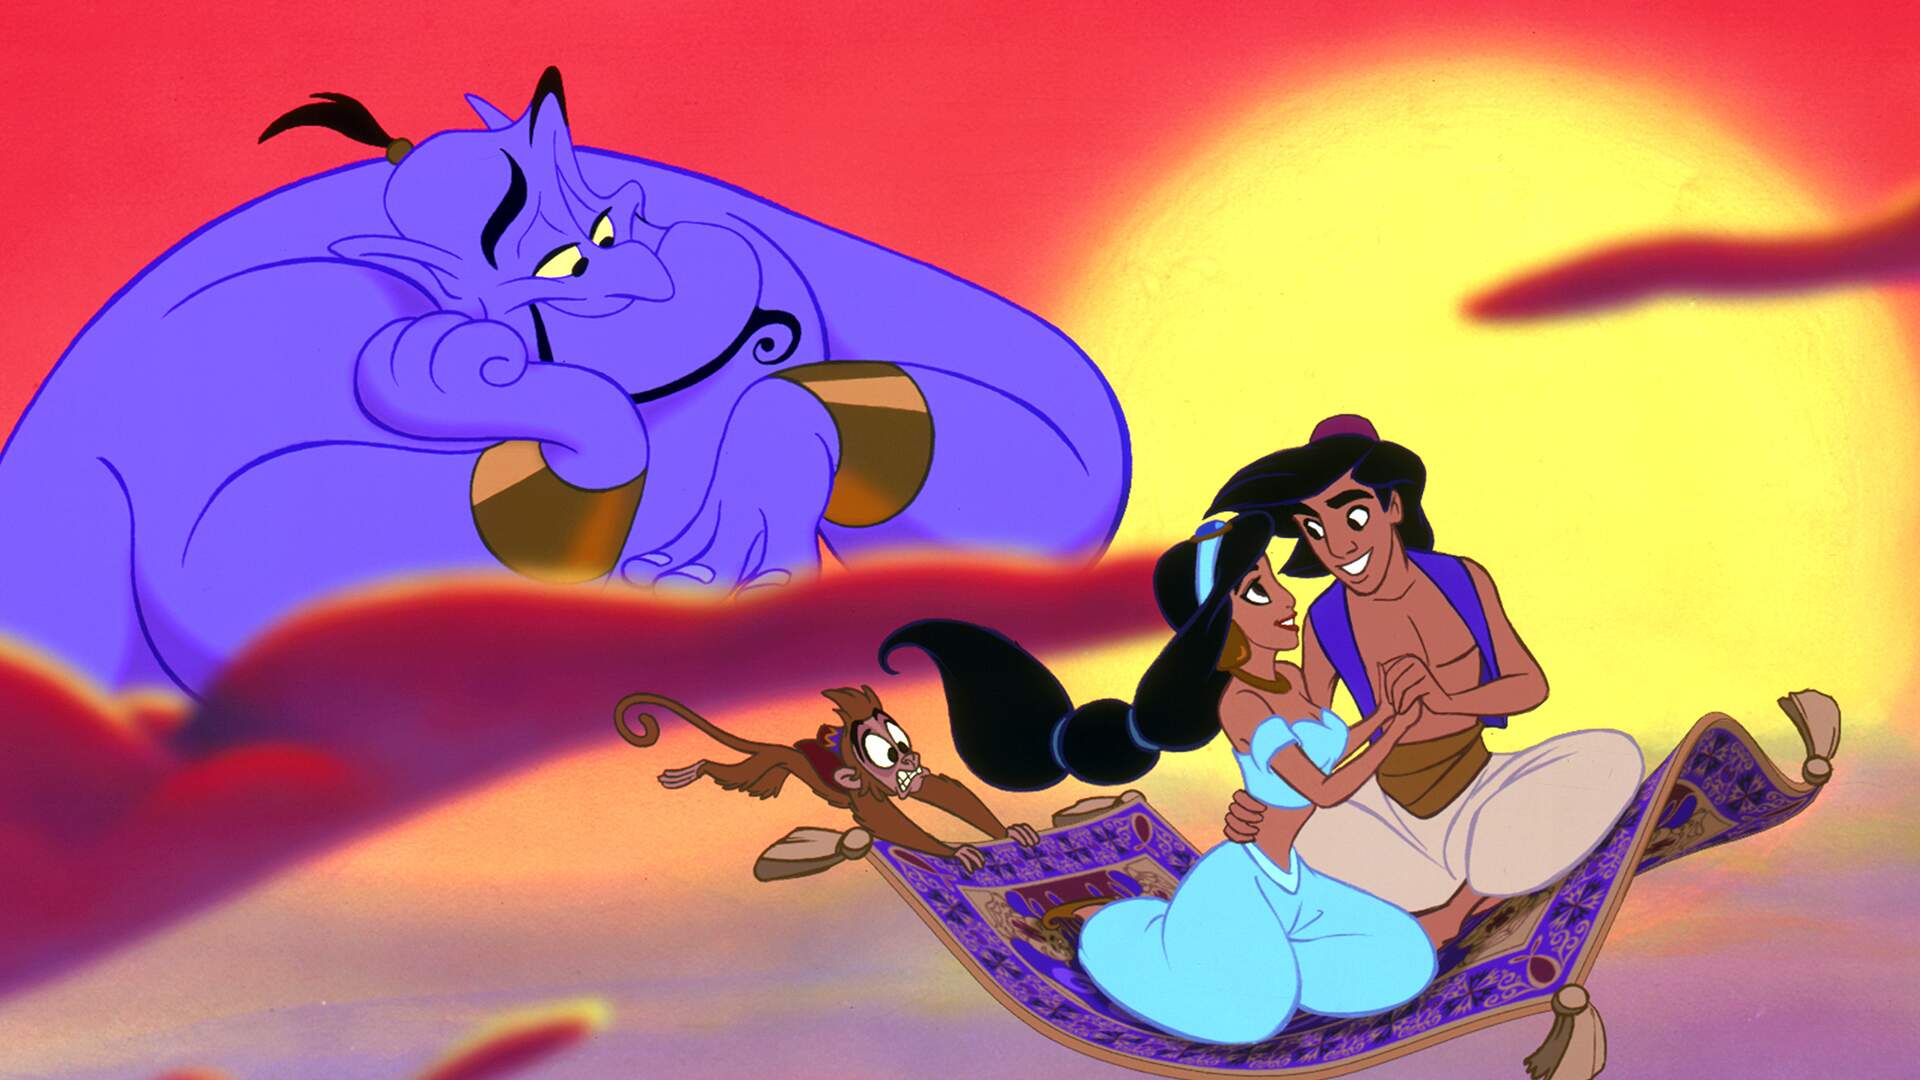 Aladdin - Aladdin e Gênio 2 PNG, No melhor do Brasil tem! No Imagens e  Moldes você encontra imagens do Aladdin, Jasmine e a Lâmpada …